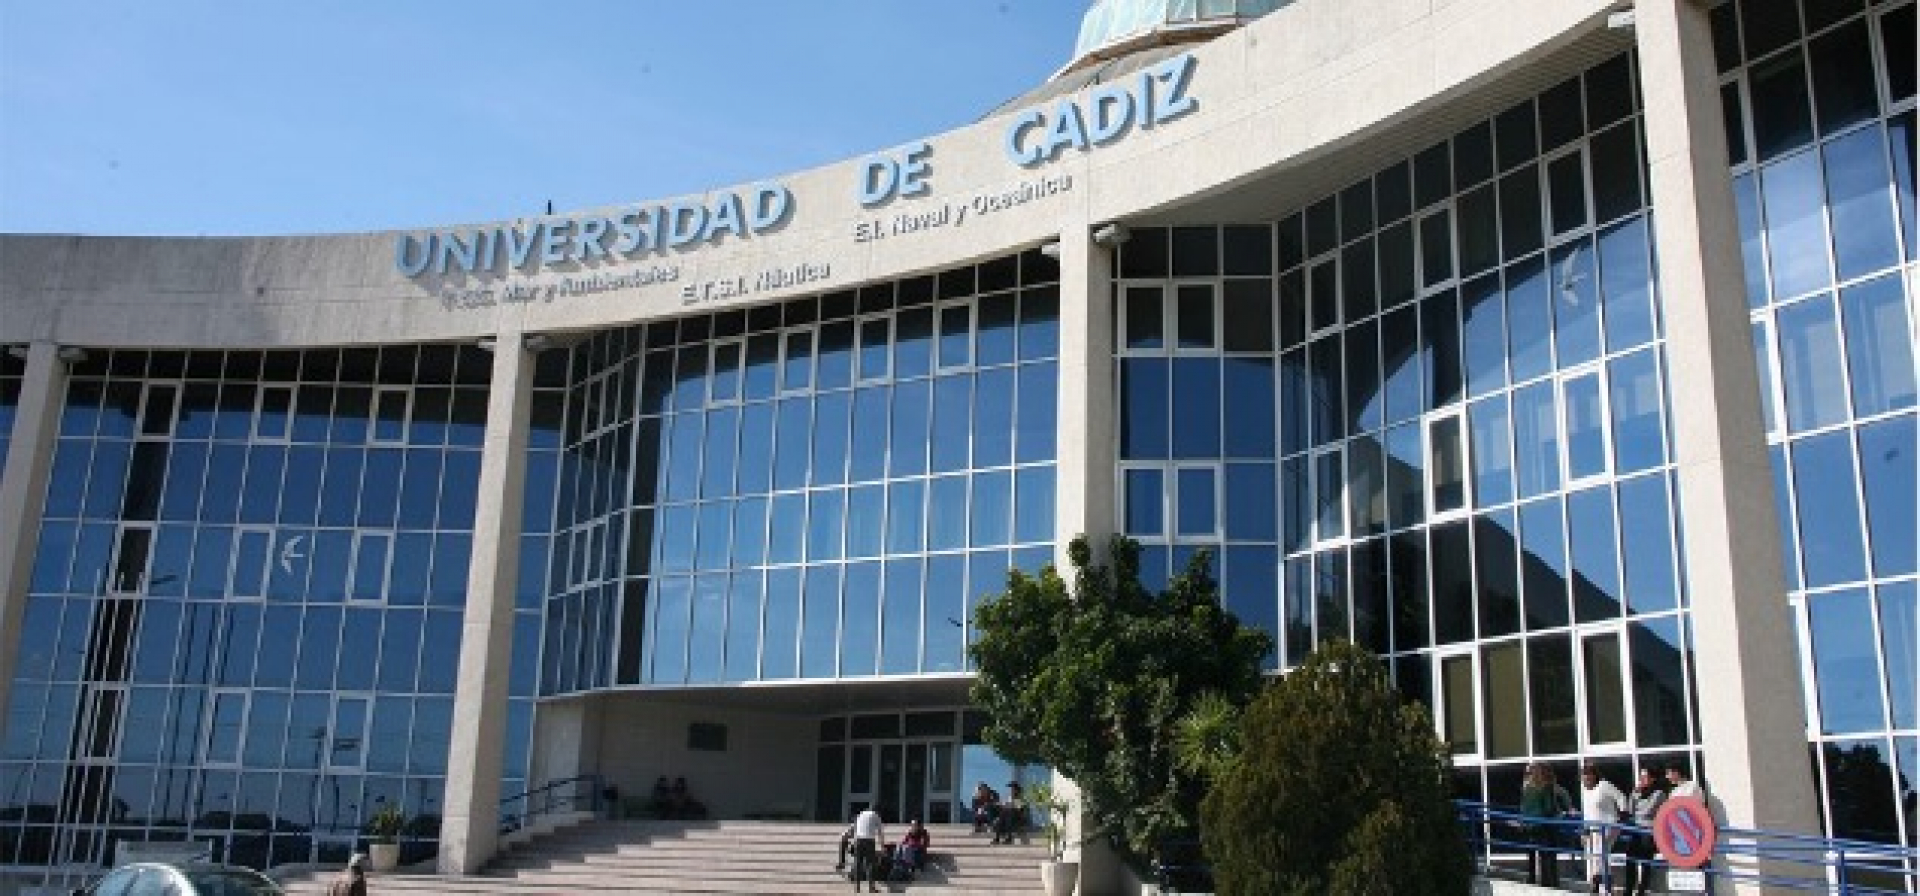 Тахсил дар Донишгоҳи Кадизи (Universidad de Cádiz) Шоҳигарии Испания дар доираи барномаи Эразмус+ КА171